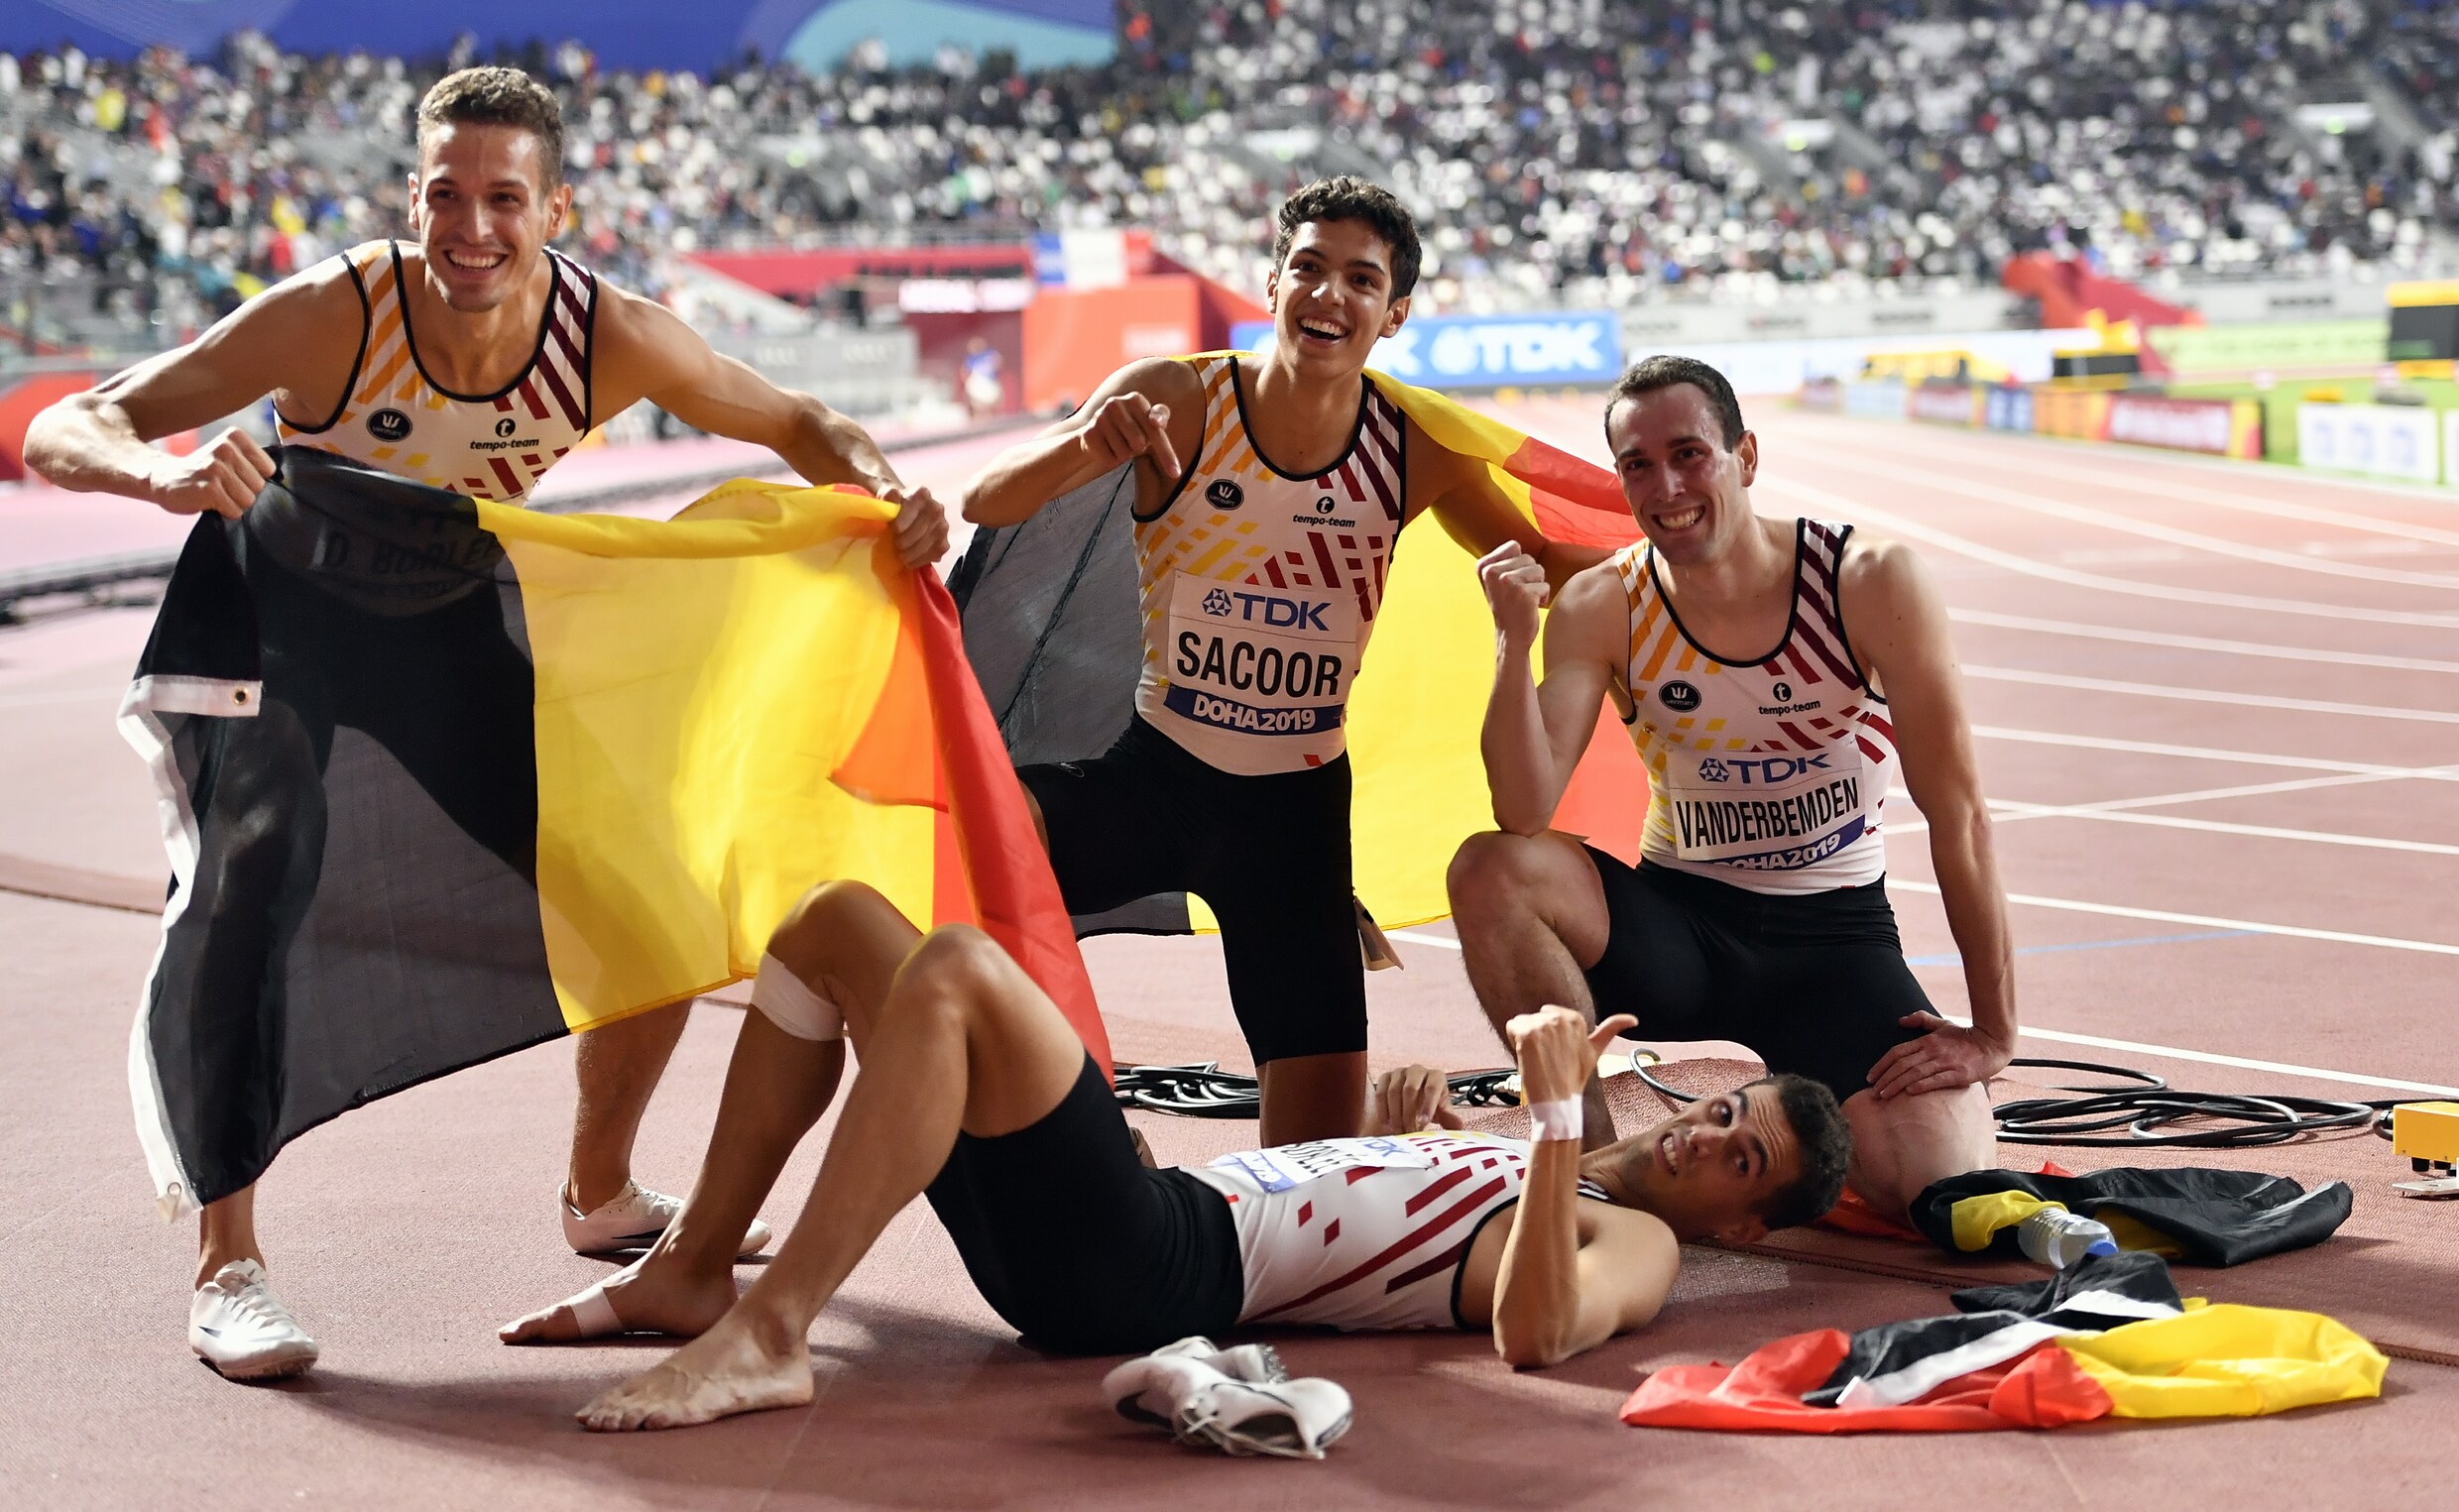 Brons voor Belgian Tornados op 4 x 400m in finale WK atletiek